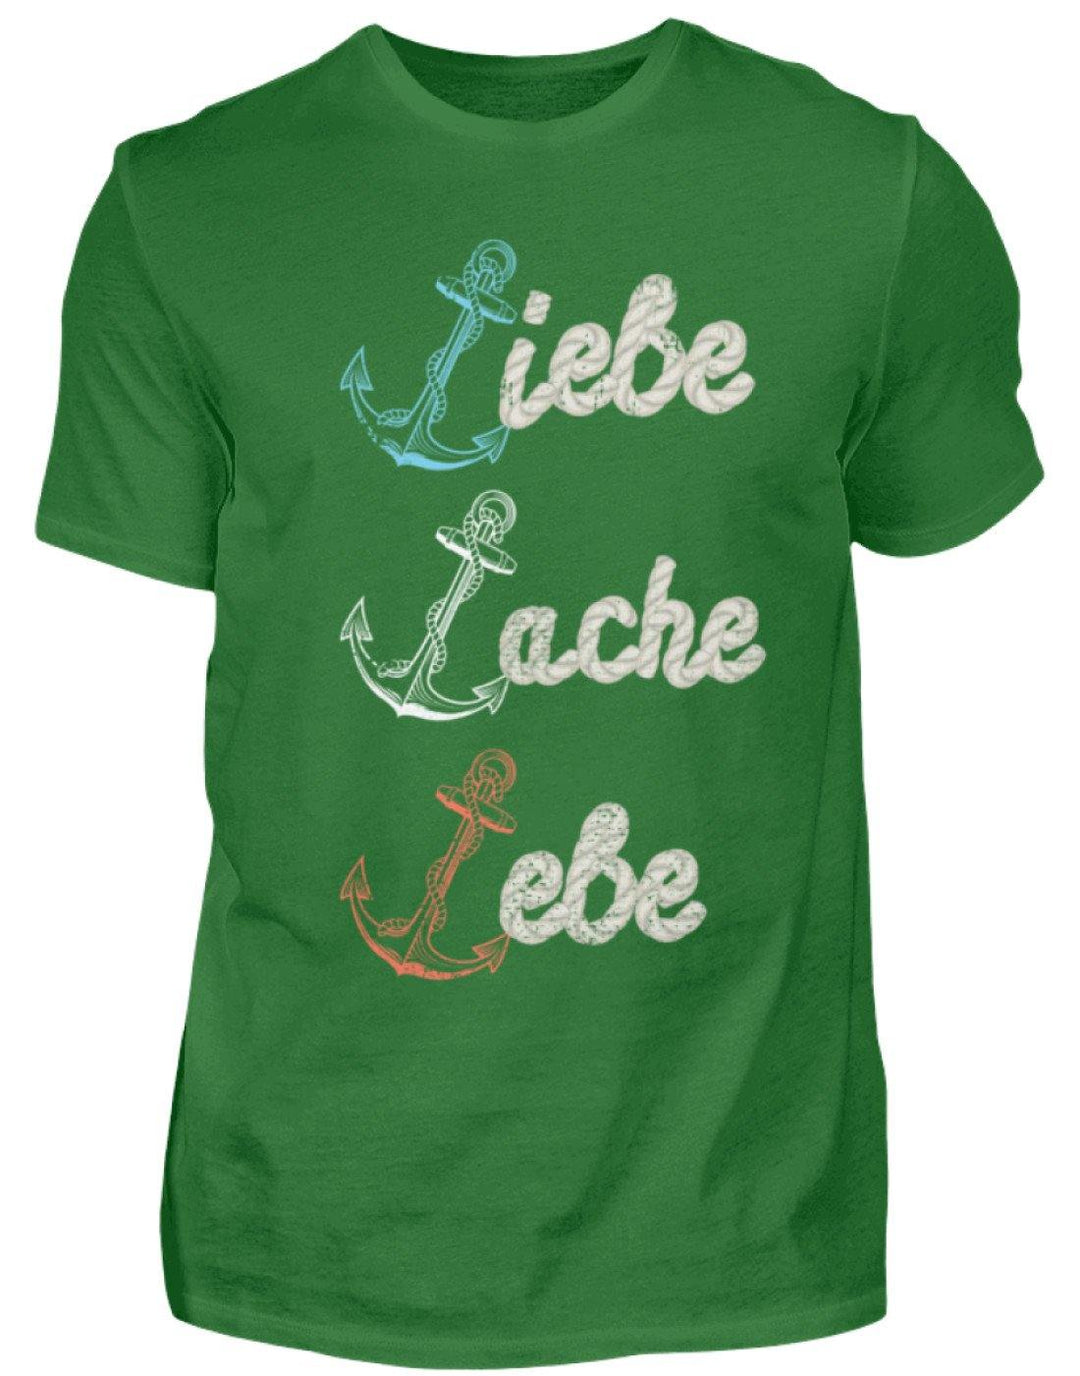 Liebe Lache Lebe - Norddeutsch   - Herren Shirt - Words on Shirts Sag es mit dem Mittelfinger Shirts Hoodies Sweatshirt Taschen Gymsack Spruch Sprüche Statement